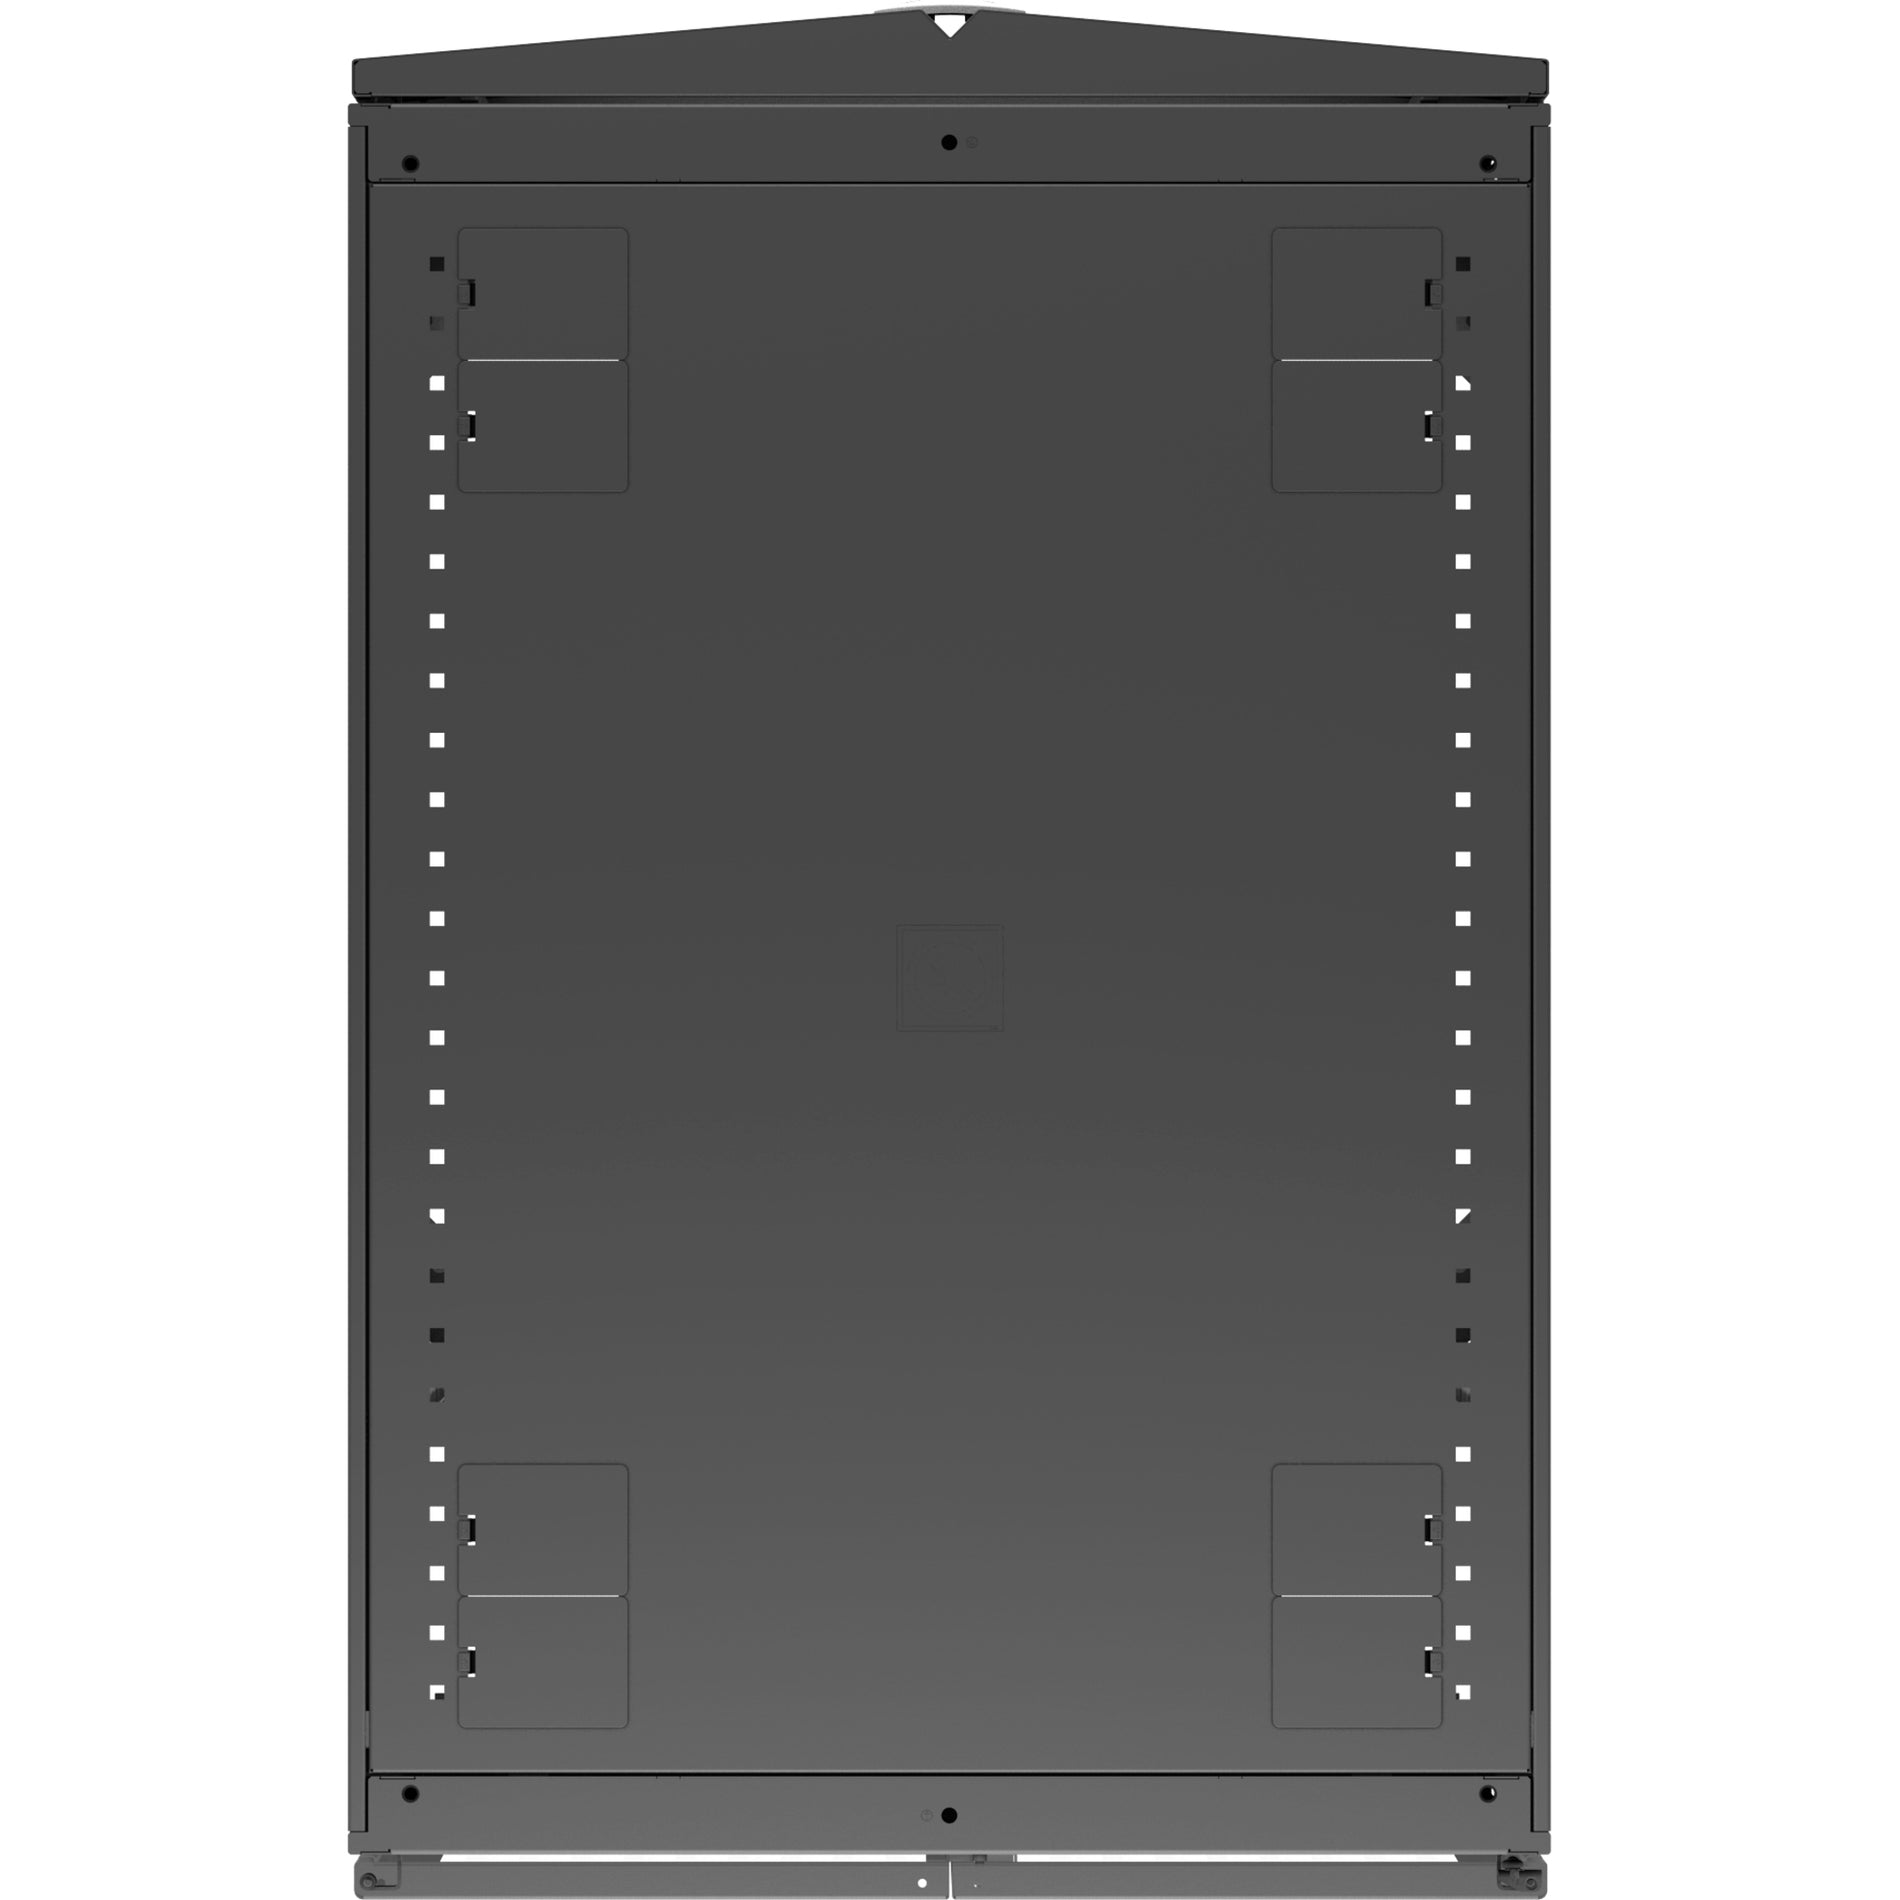 VERTIV VR3150 Vertiv VR Rack - 42U Server Rack Enclosure, 800x1100mm, 19-inch Cabinet - Efficient Storage Solution for Servers, KVM Switches, and More